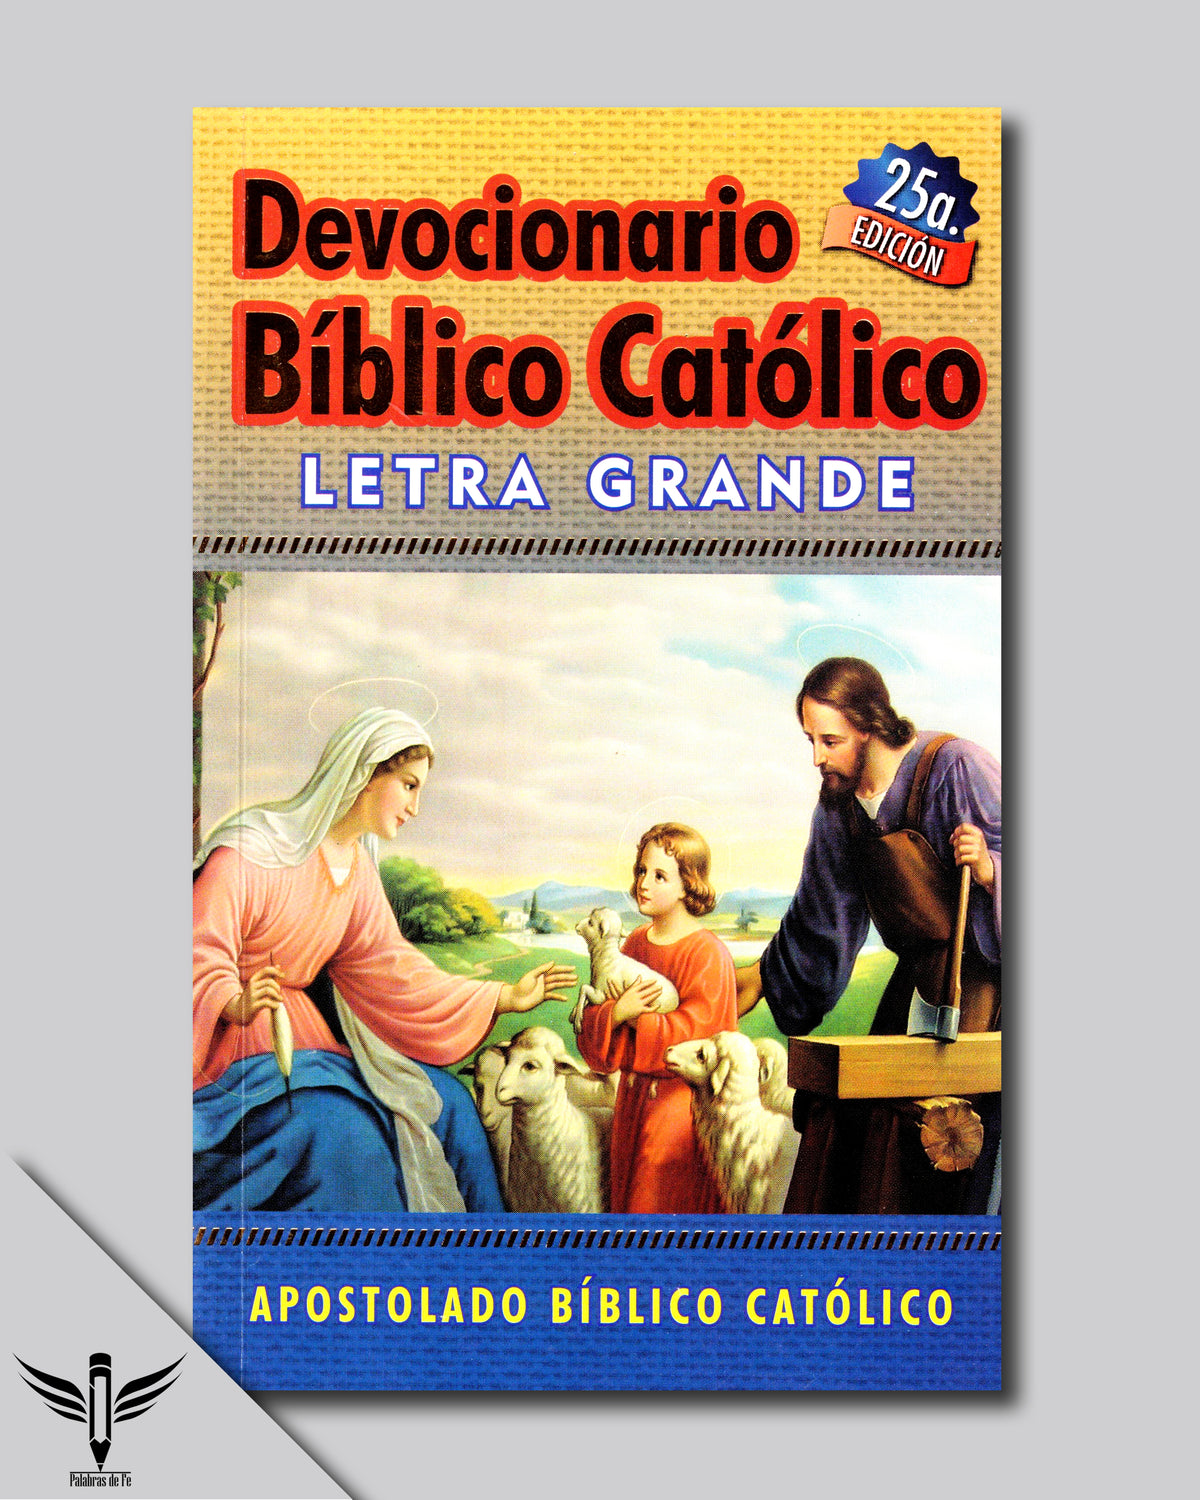 Devocionario Bíblico Católico con Letra Grande